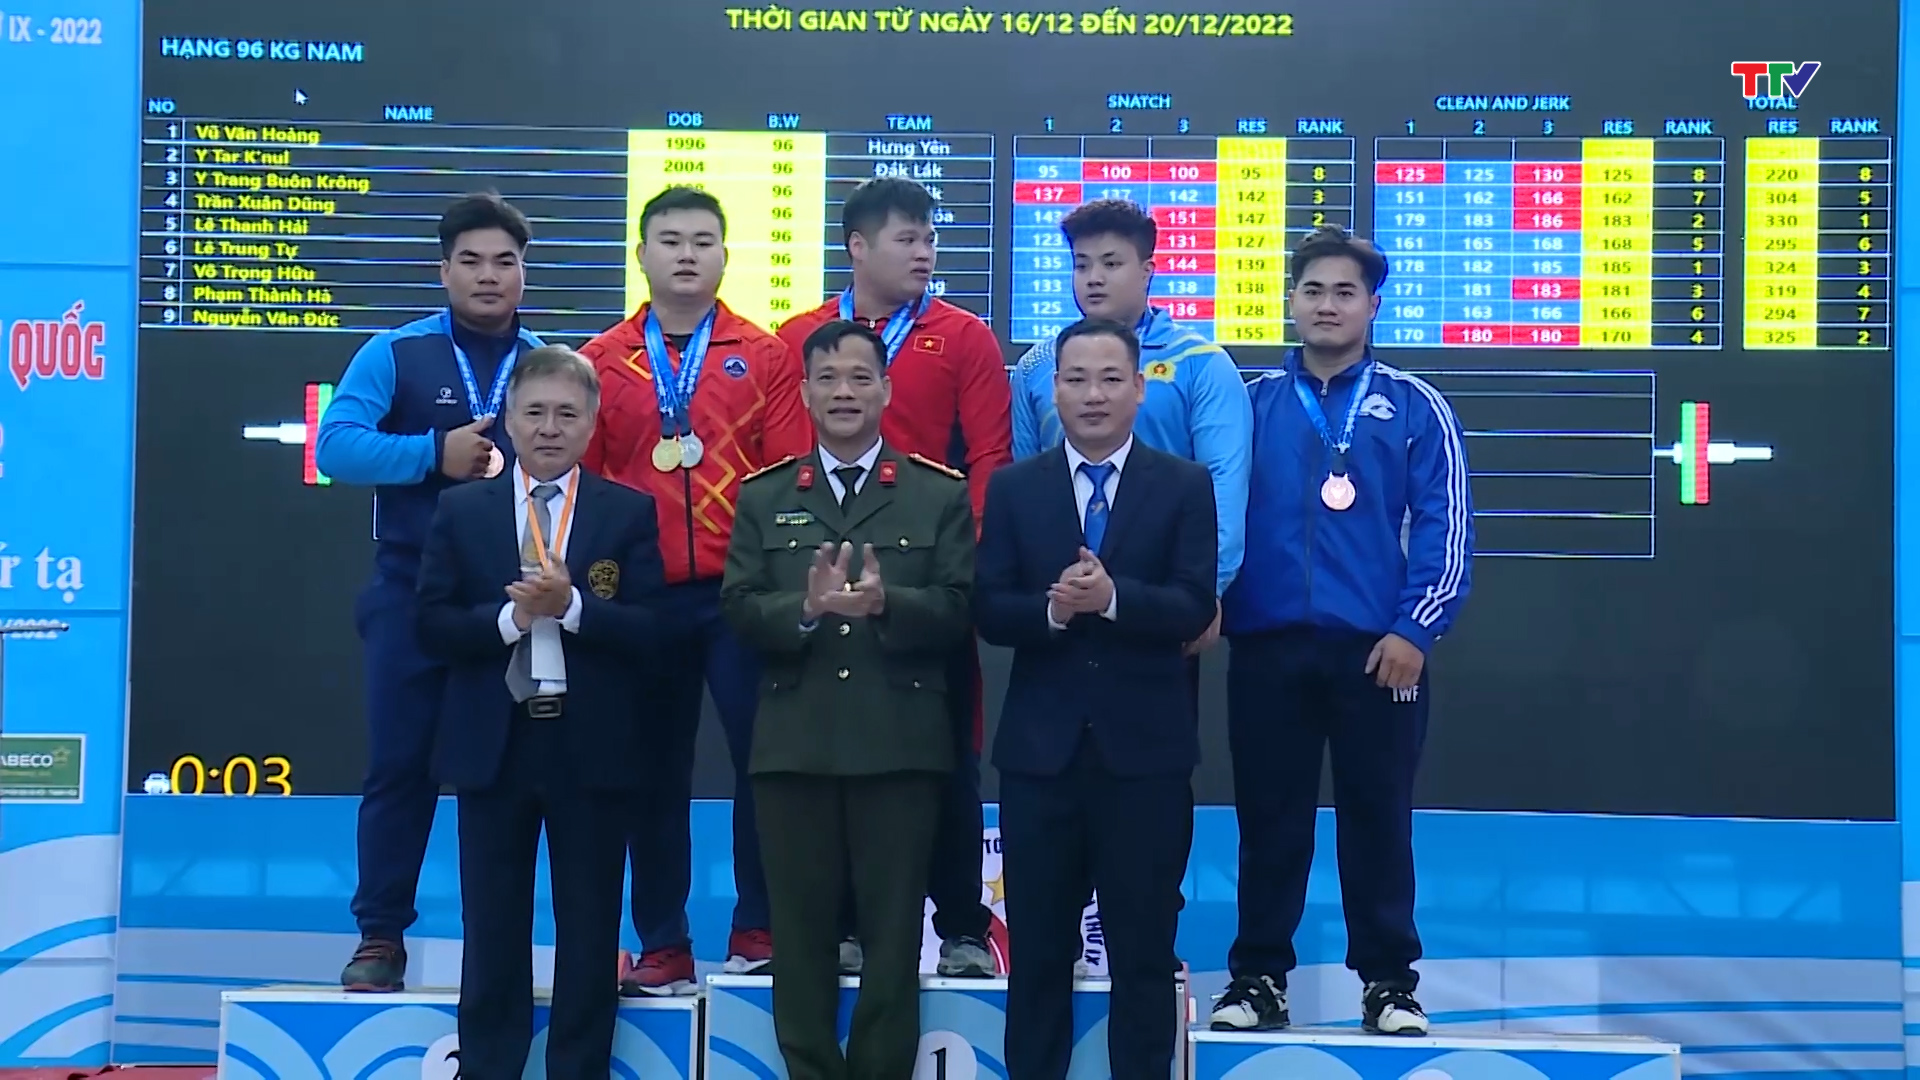 Đoàn thể thao Thanh Hóa chiếm ưu thế trong cuộc đua top 4 Đại hội thể thao toàn quốc 2022 - Ảnh 4.